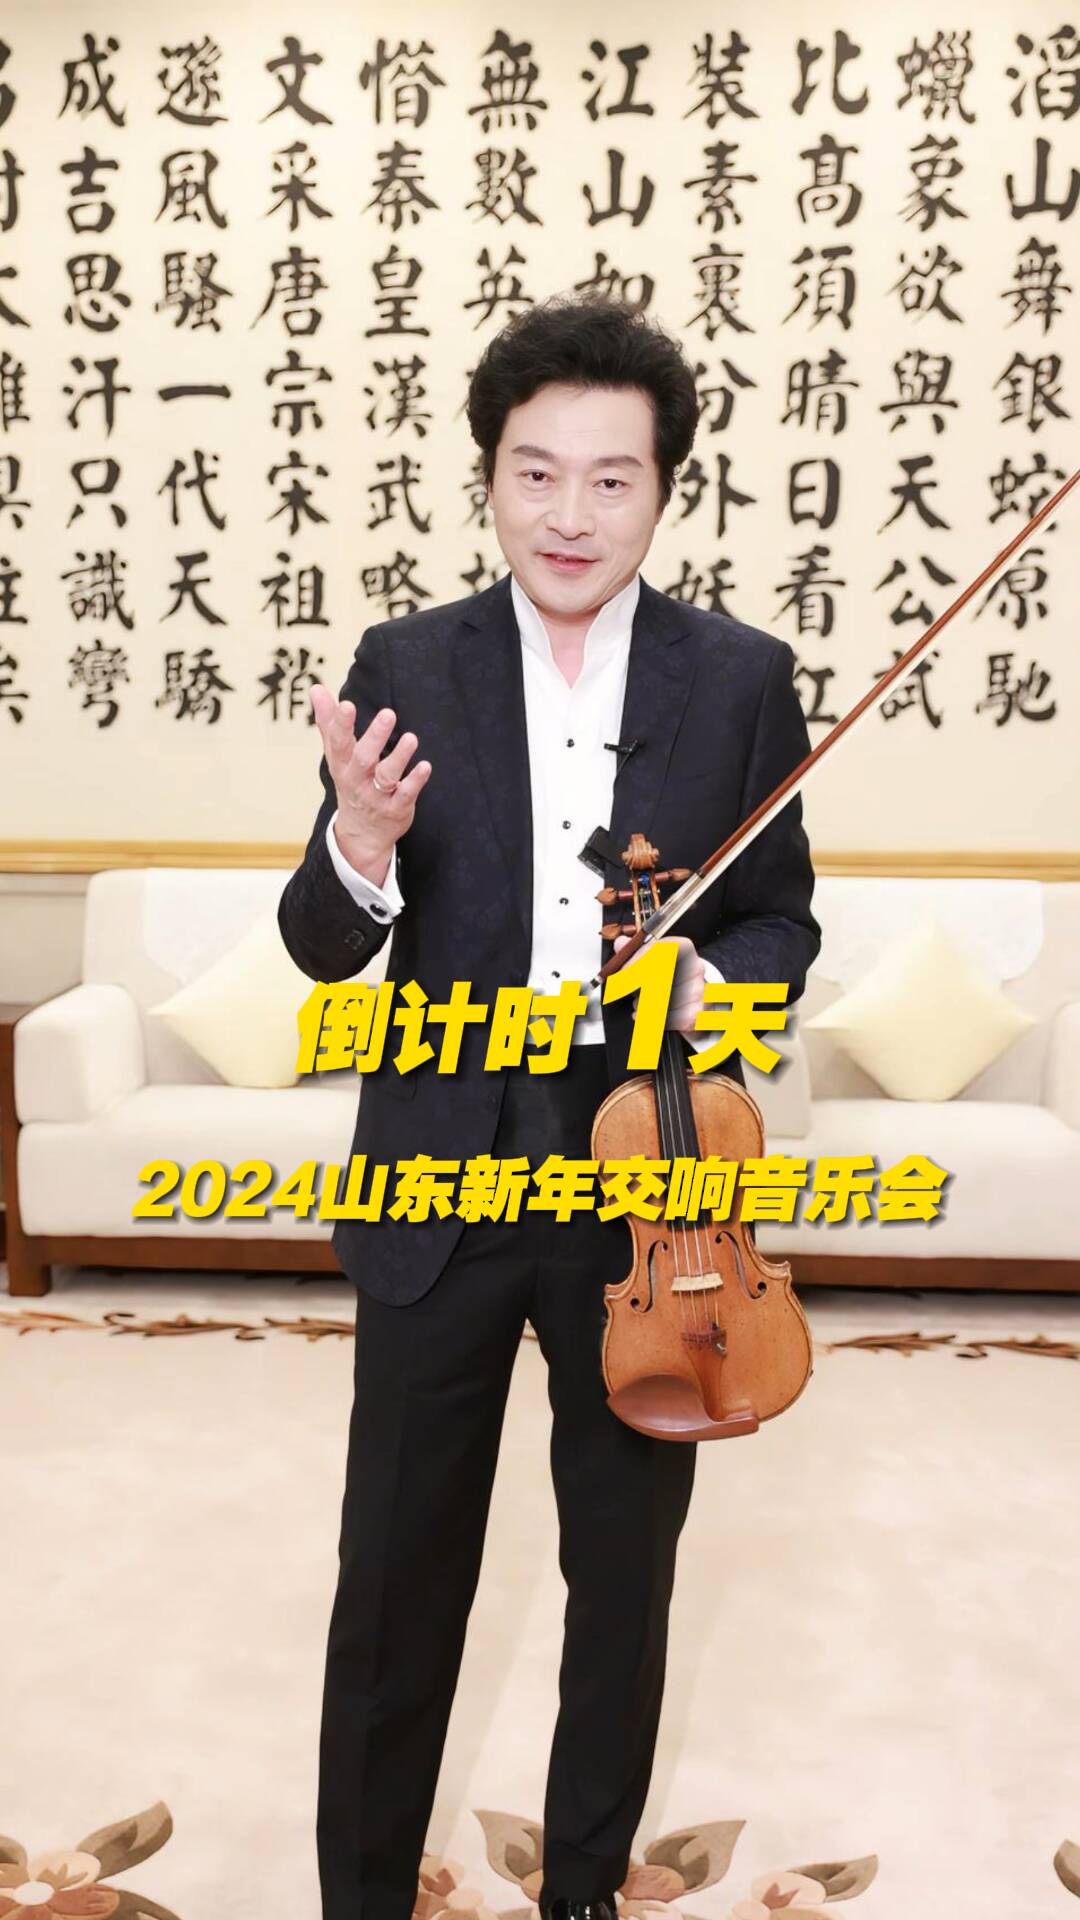 倒计时1天！著名小提琴演奏家吕思清带您跨年